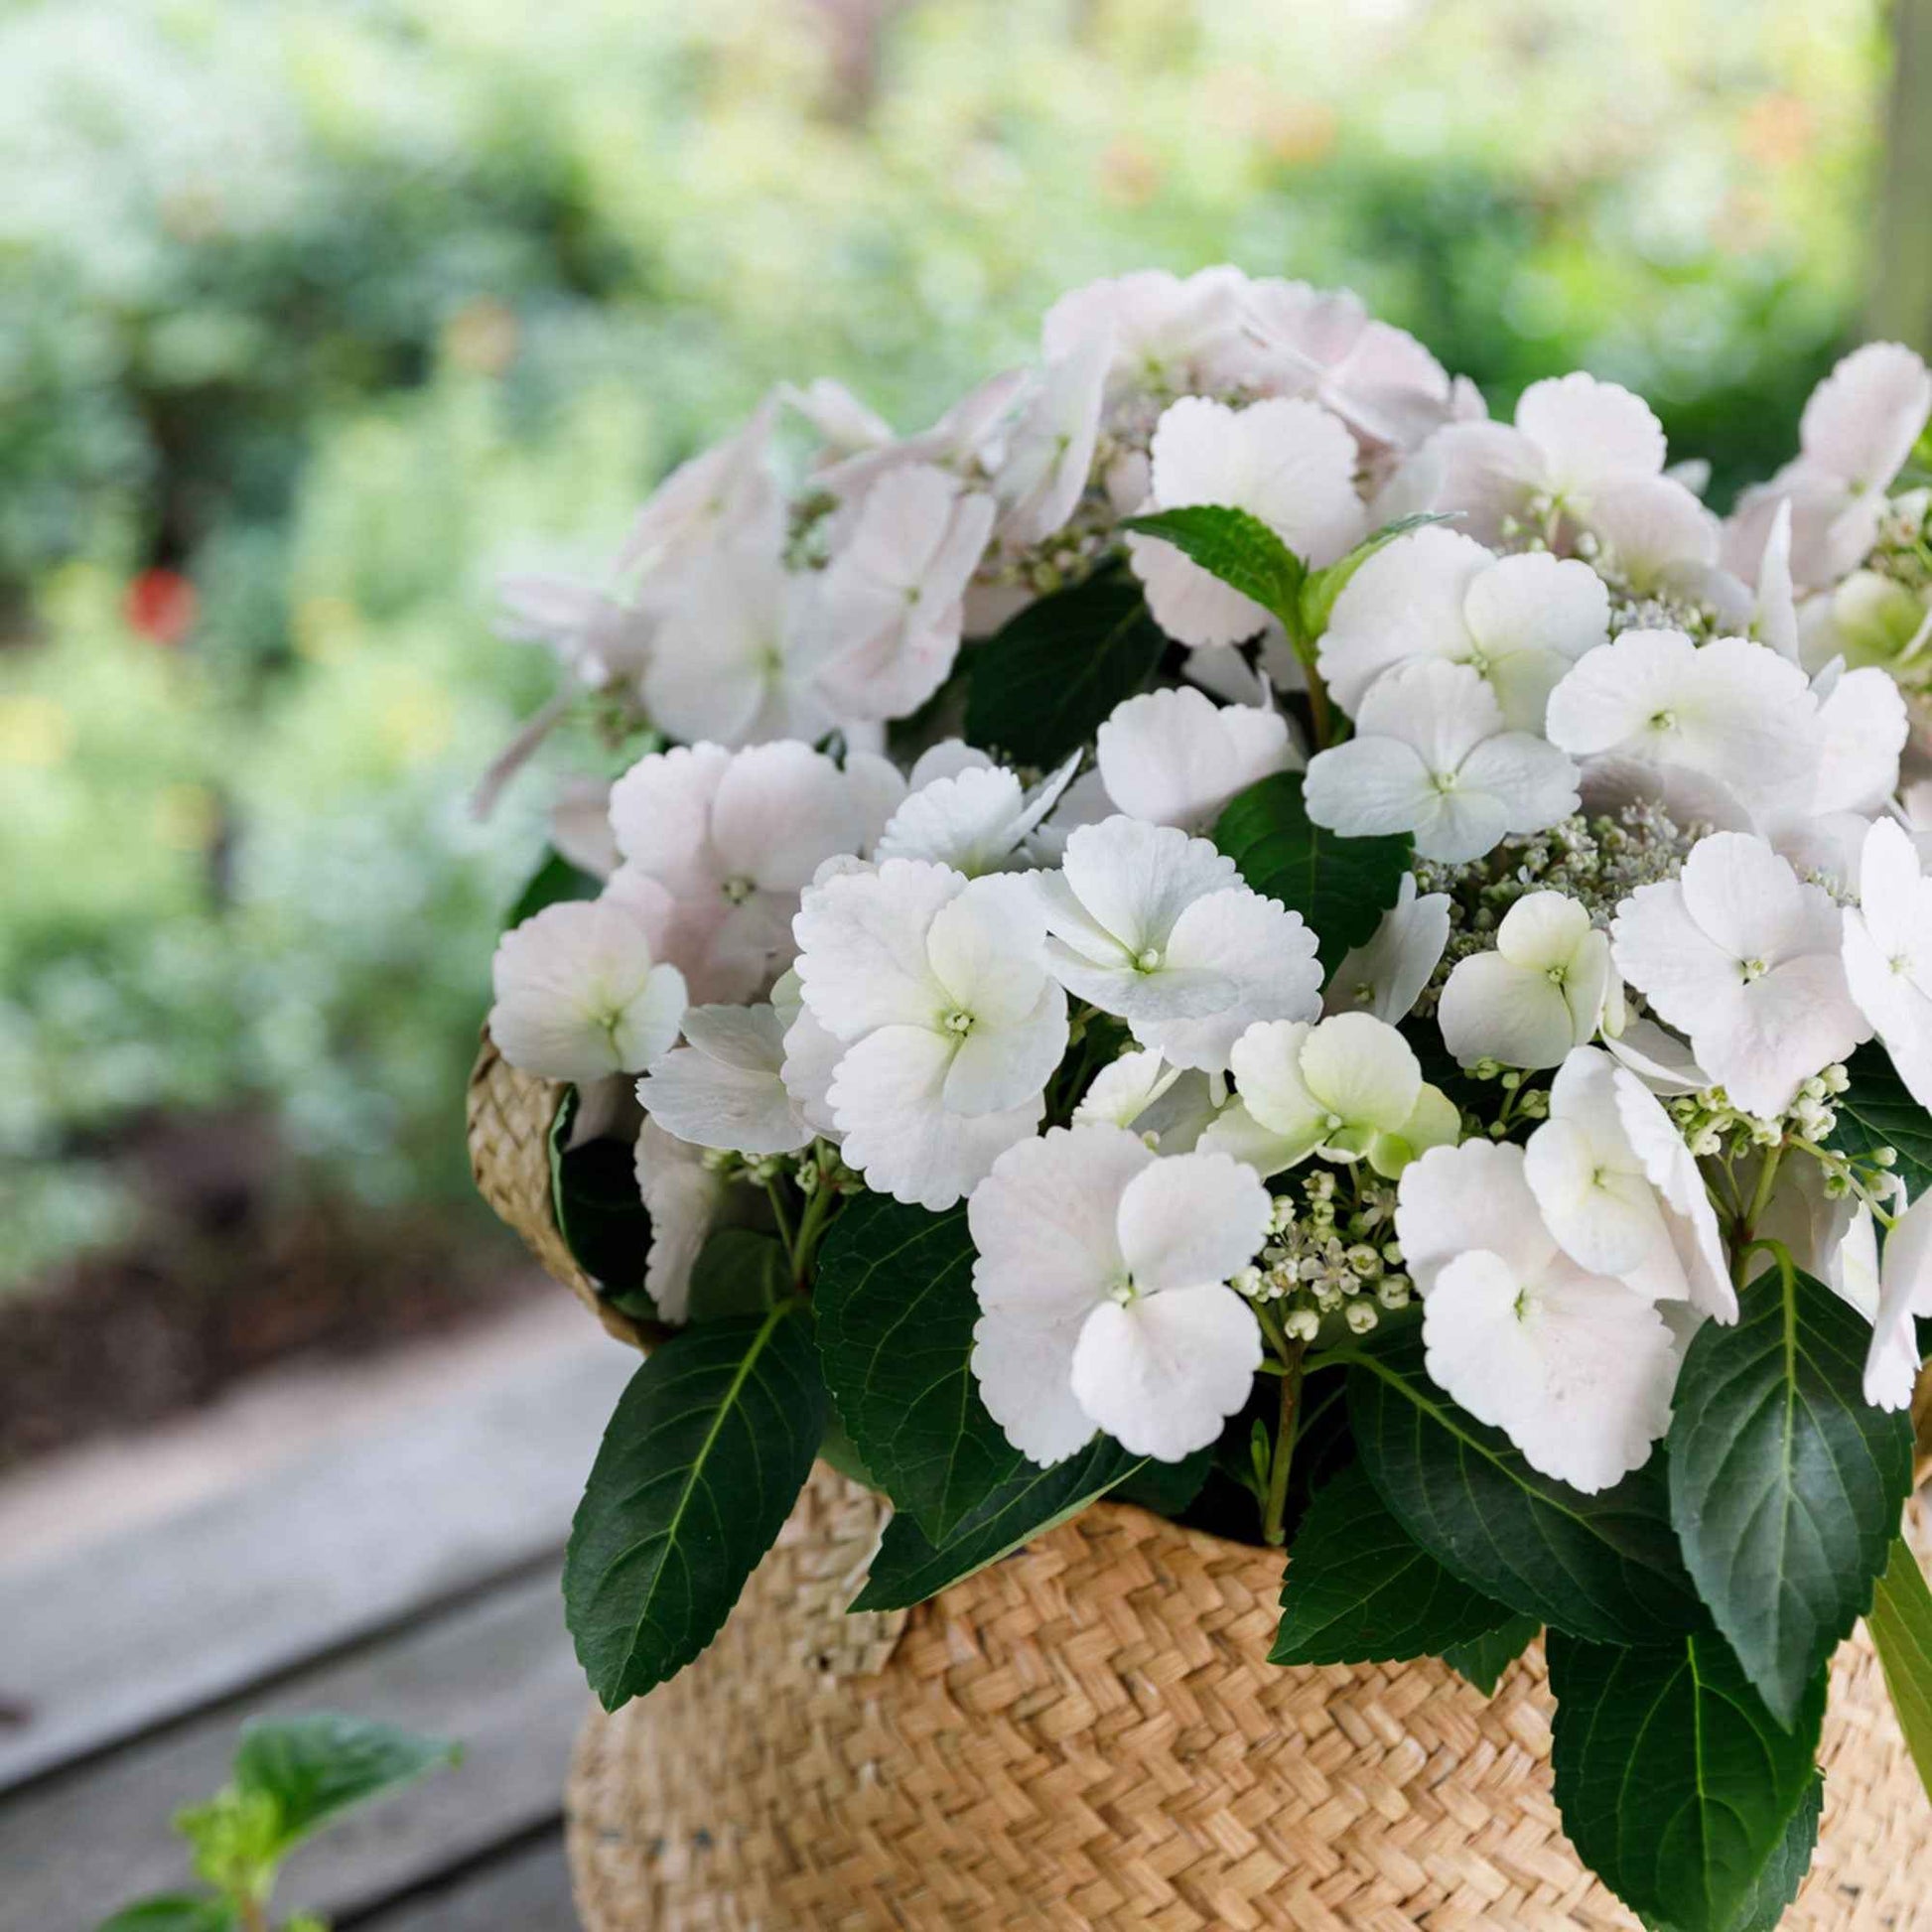 Hortensie Hydrangea hybride 'Runaway Bride', weiß - Blühende Sträucher